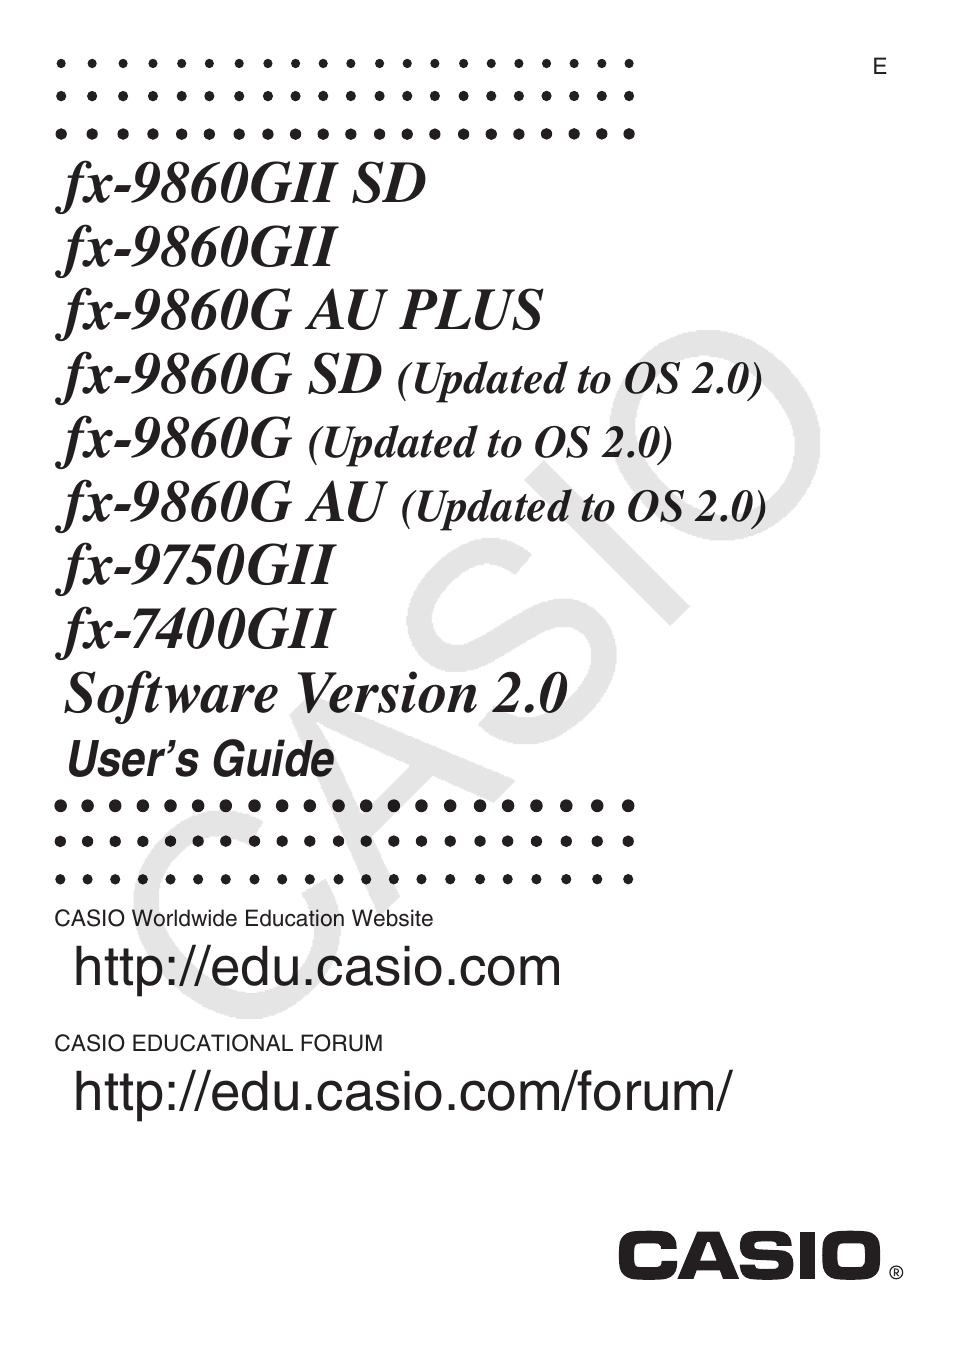 Casio FX-9750GII User Manual | 402 pages | Also for: FX-9860GII, fx-9860G  AU PLUS, fx-9860G AU, fx-9860GII SD, fx-9860G SD, FX-9860G, FX-7400GII,  E-CON2